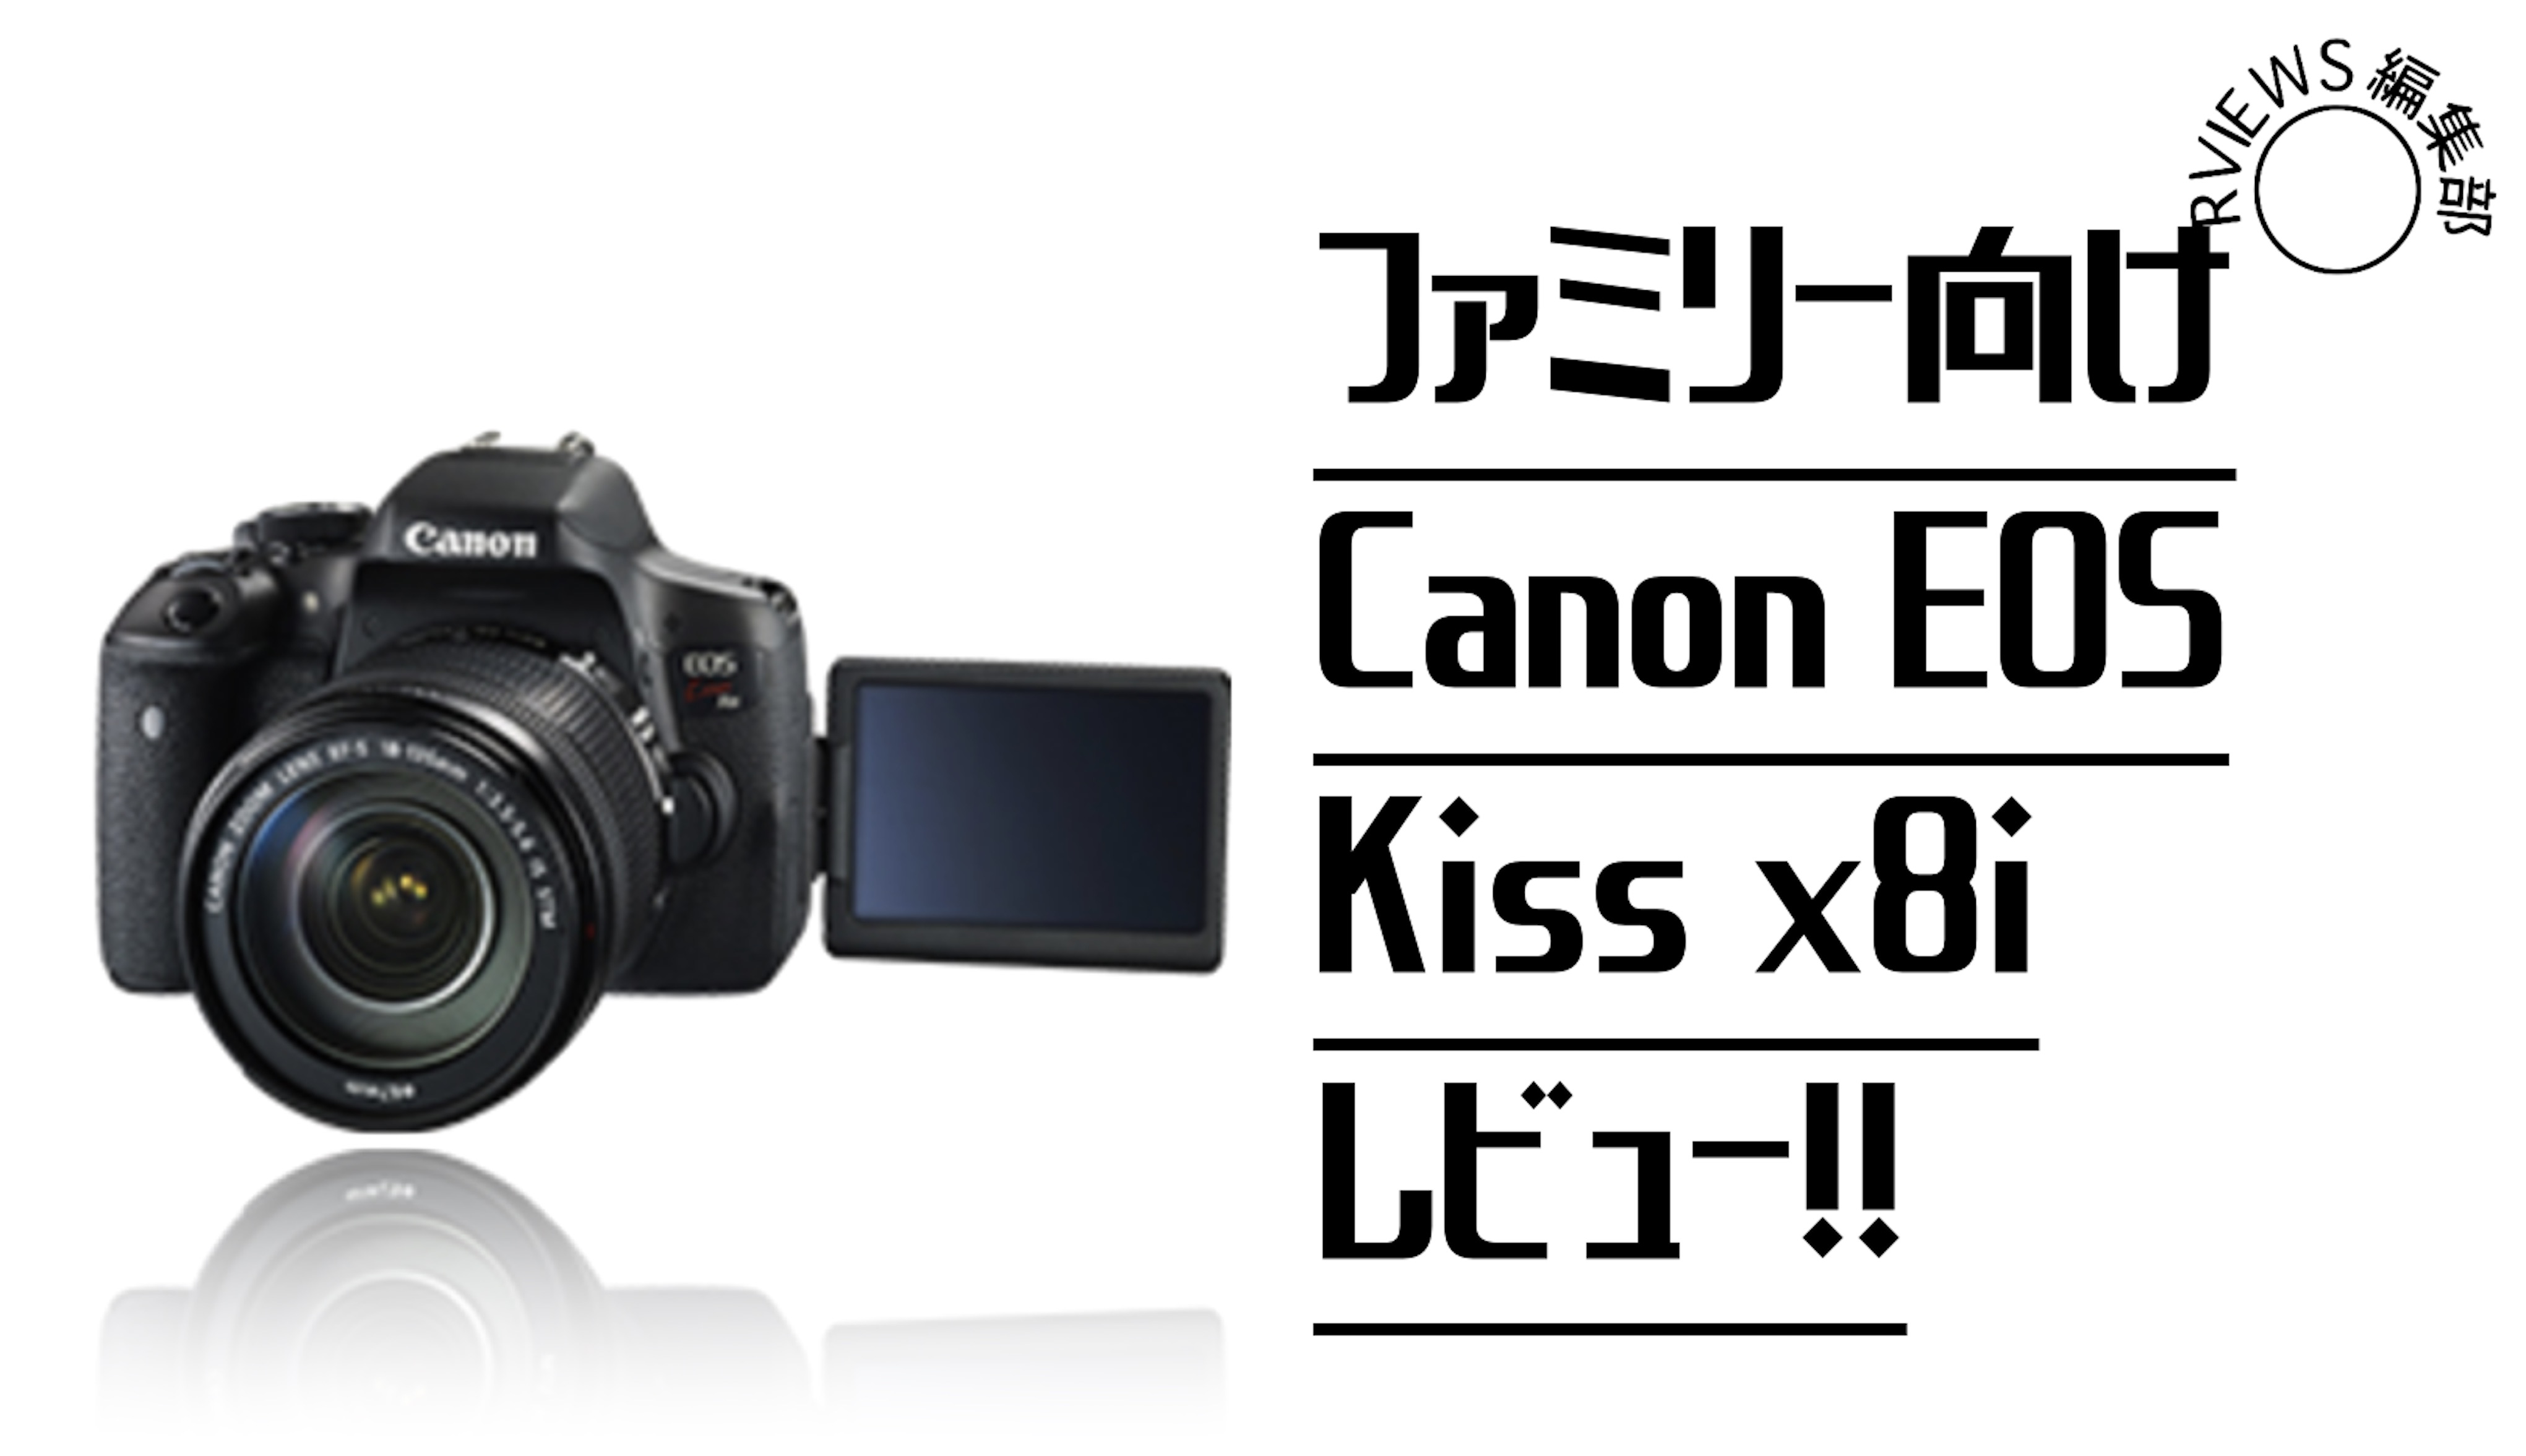 キャノン canon kiss x8i 標準&望遠ダブルレンズセット - カメラ